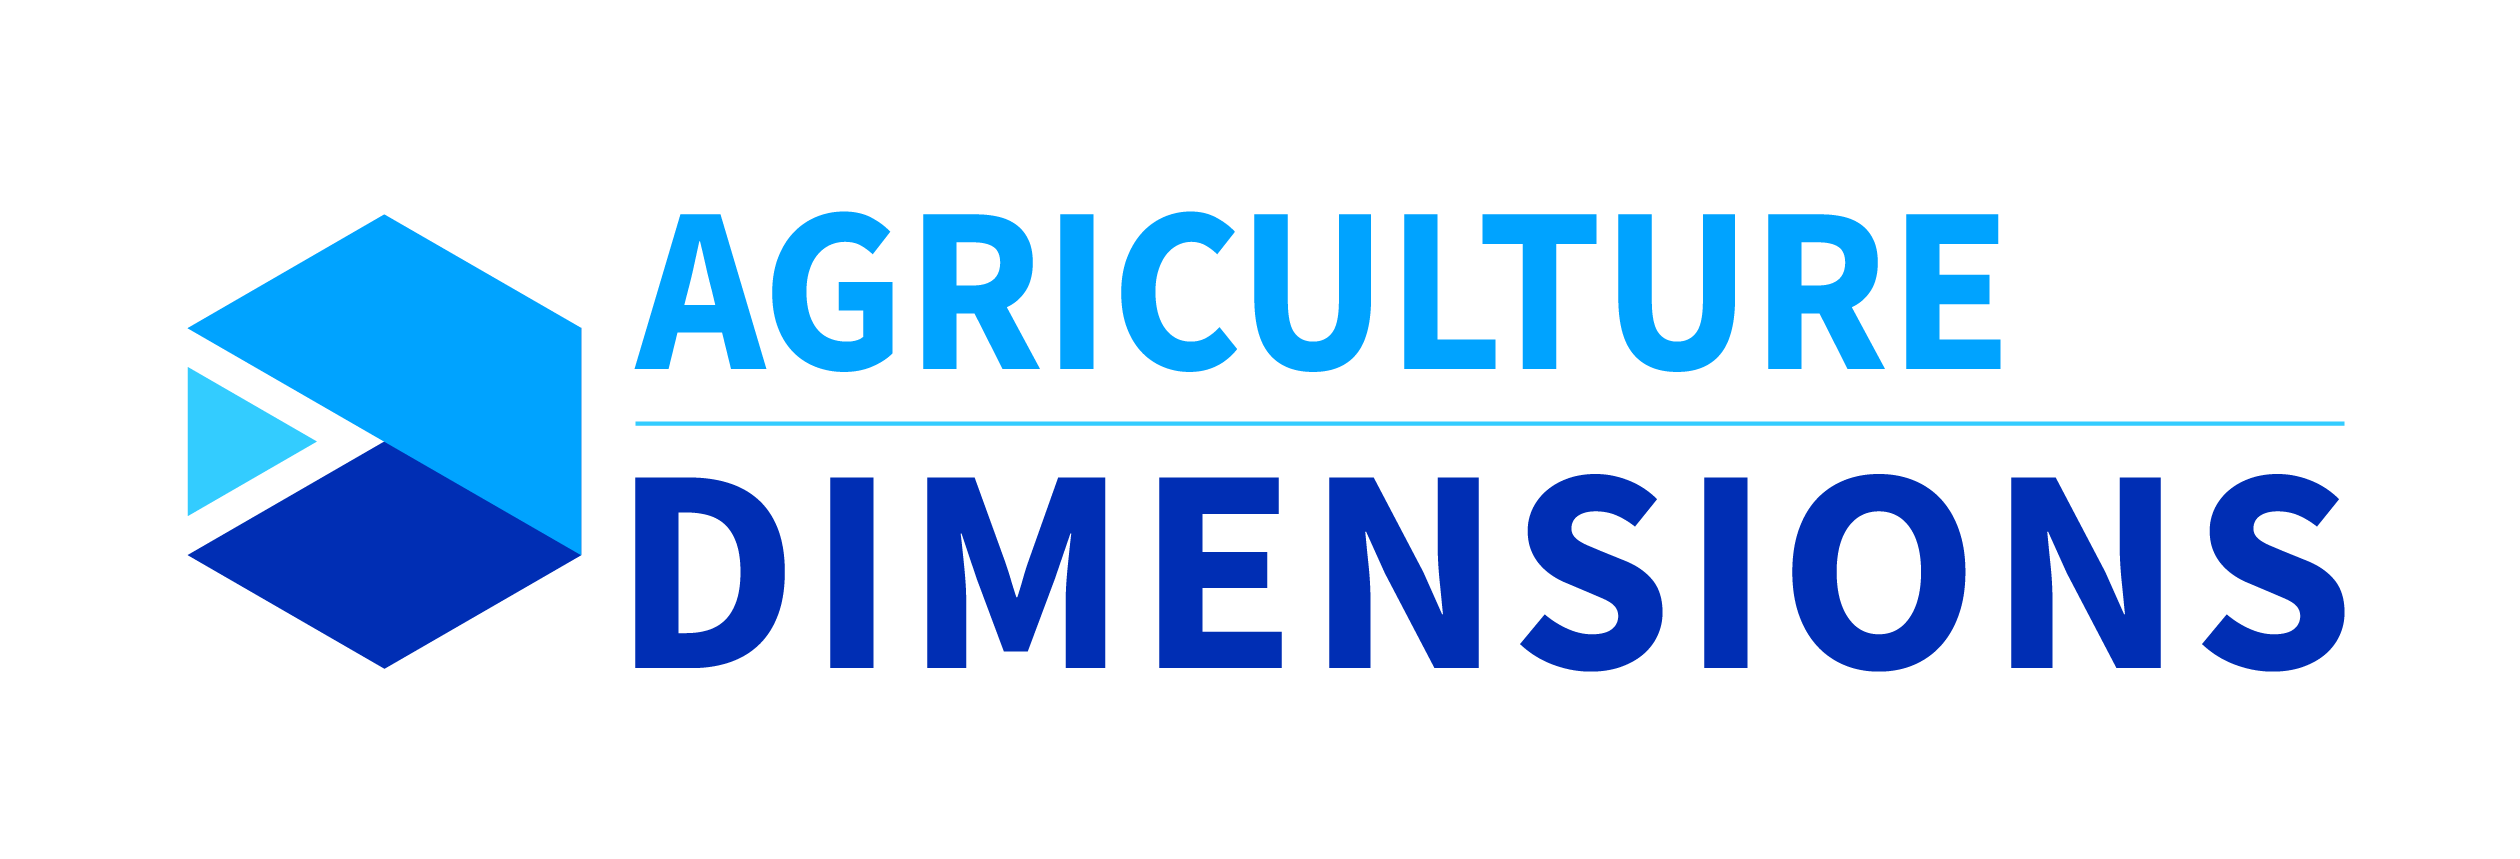 Dimensions de l'agriculture - Acceltech Pte Ltd